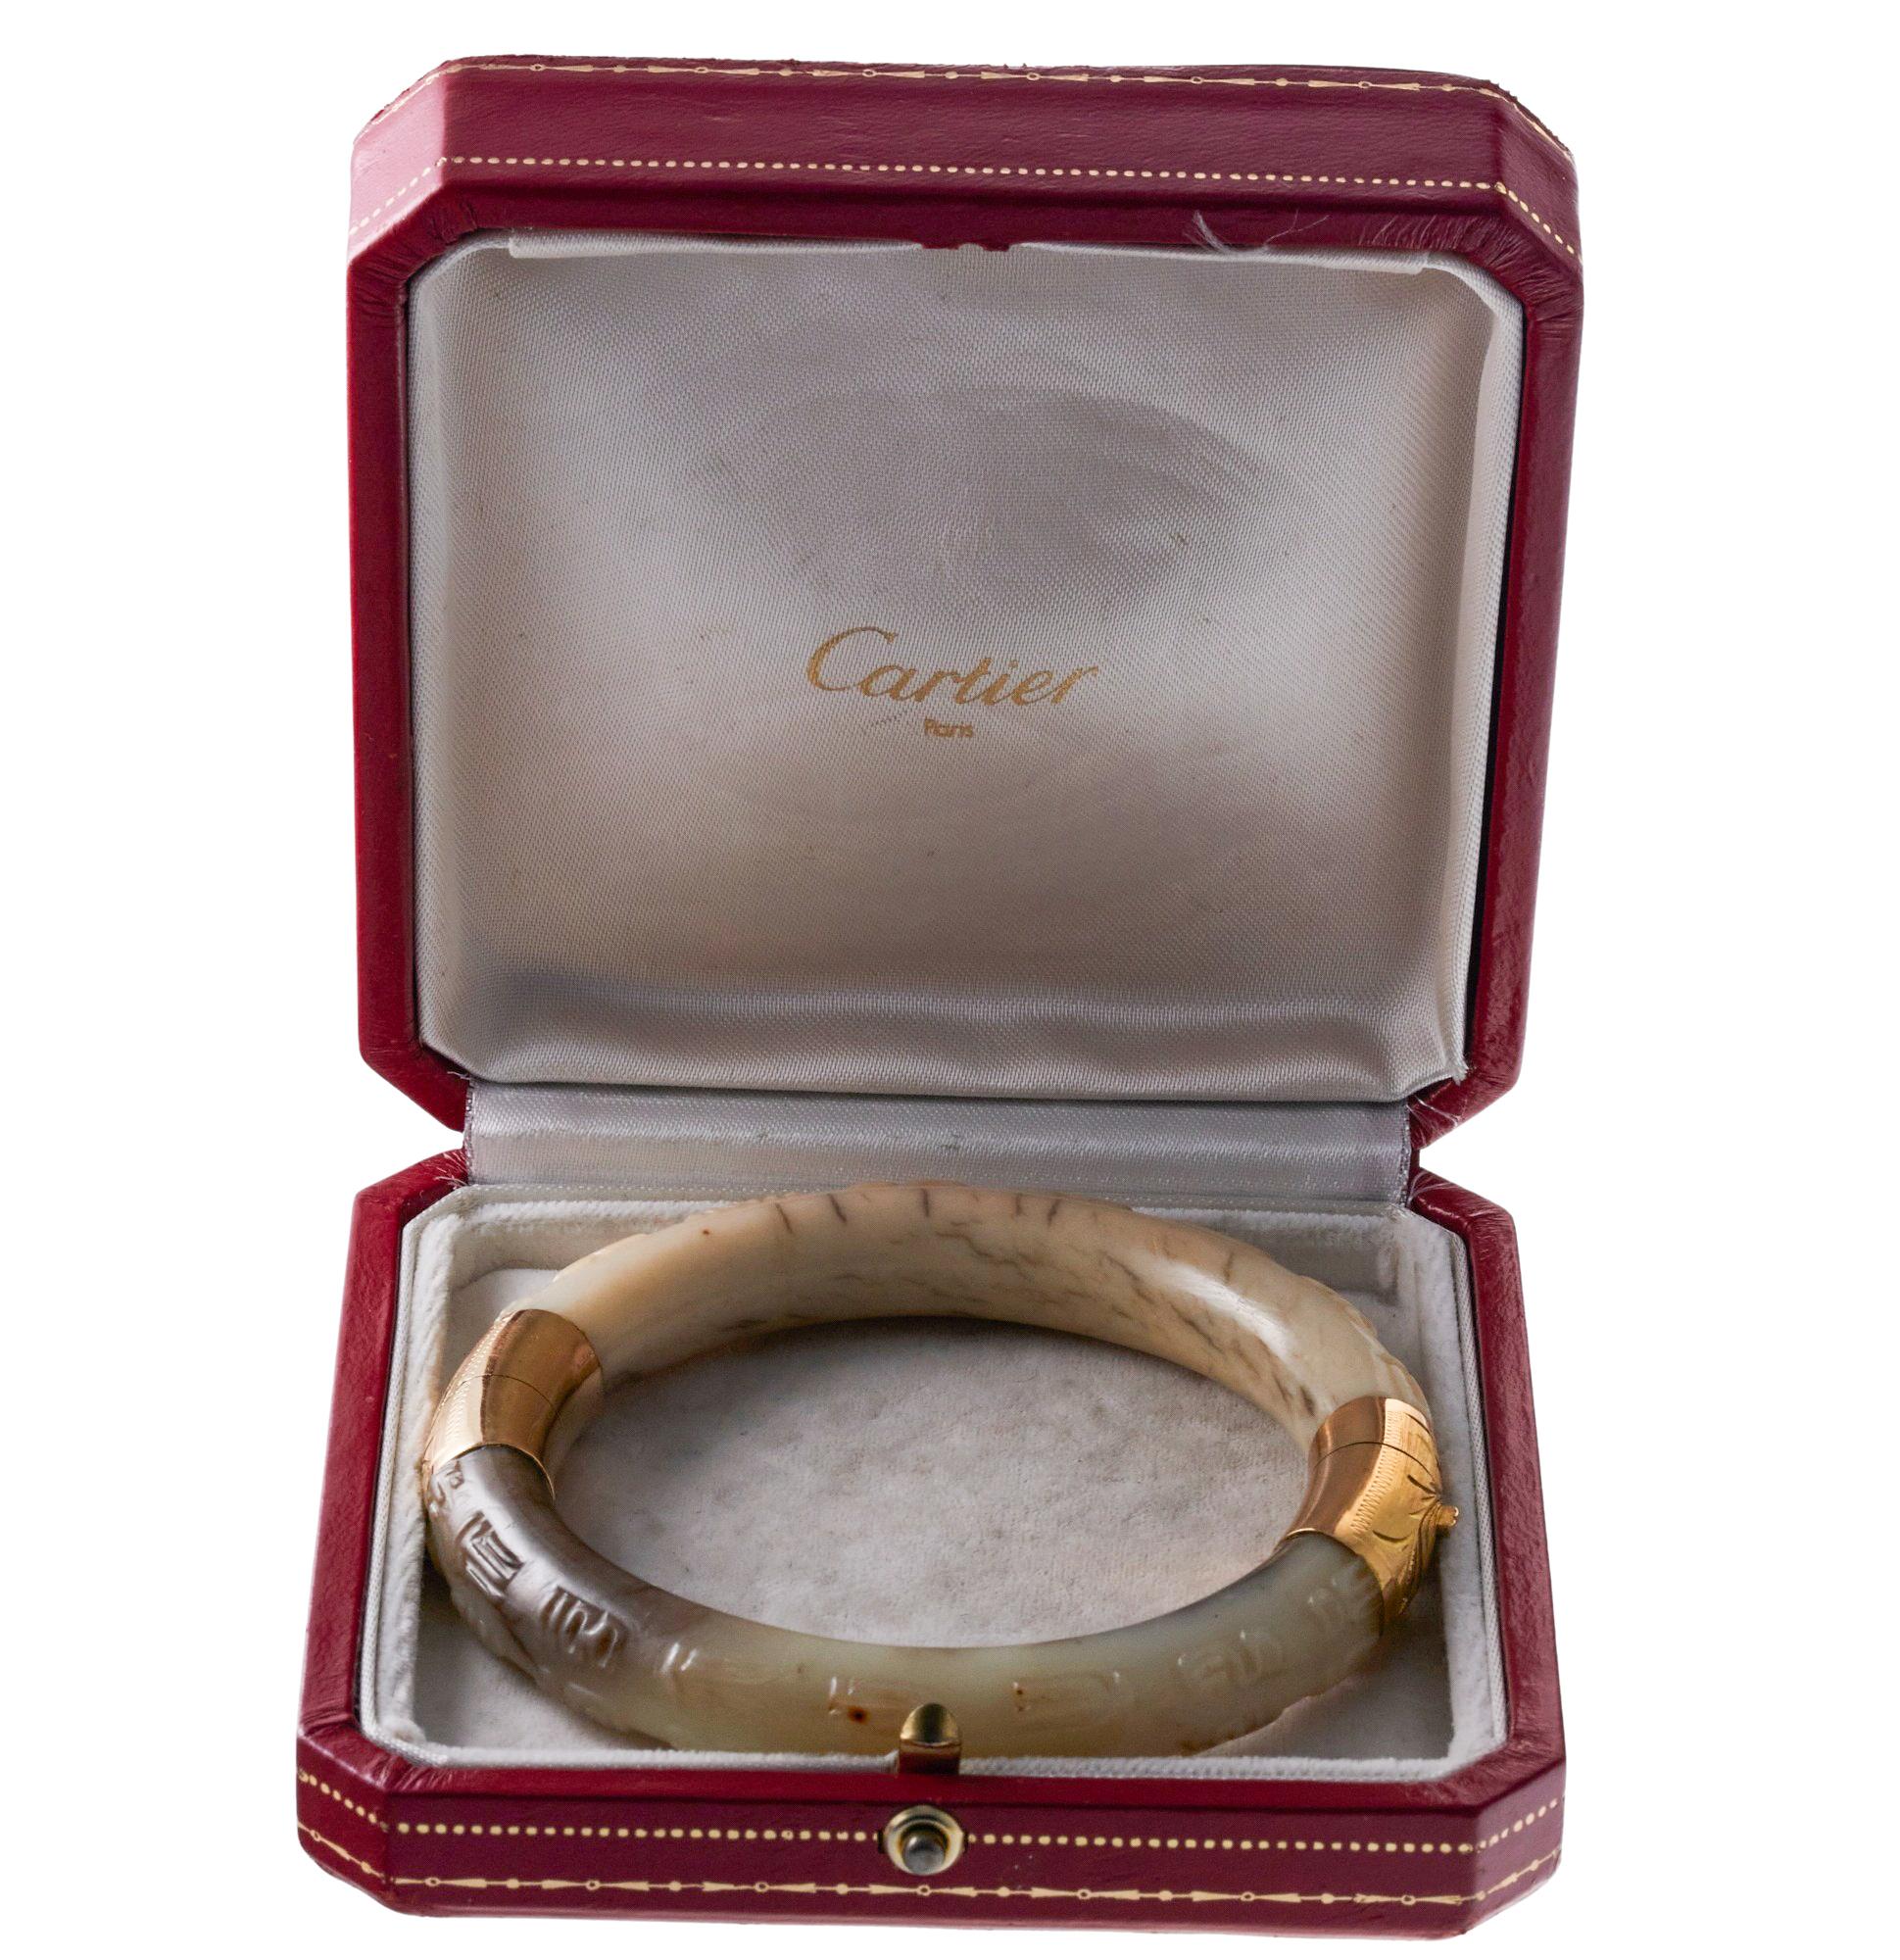 Bracelet bangle ancien en or 18 carats de Cartier, orné de jade sculpté. Livré dans sa boîte d'origine - usure due à l'âge.  Le bracelet s'adapte à un poignet d'environ 7